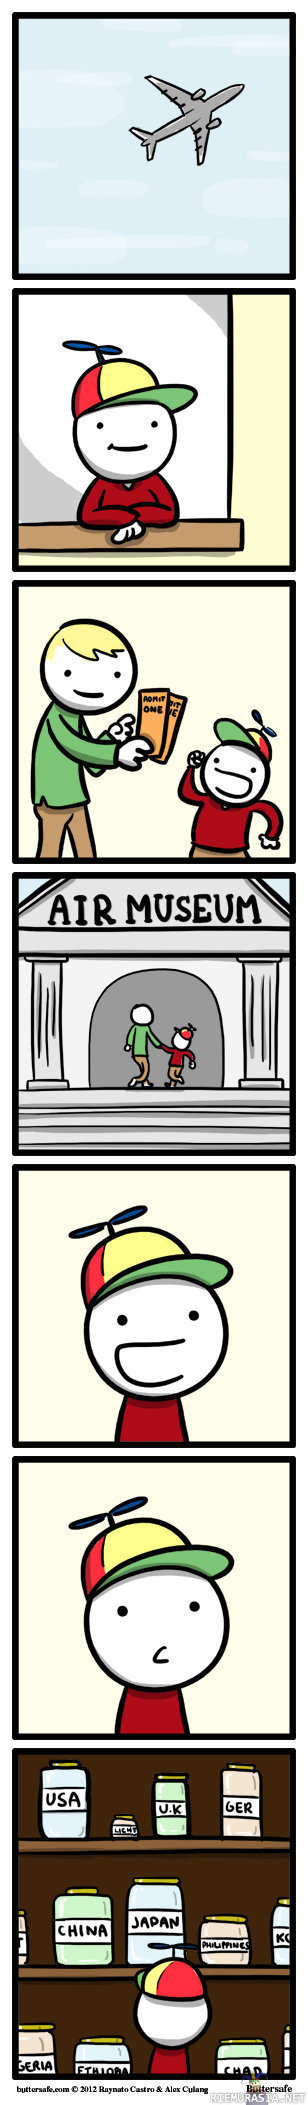 Air museum